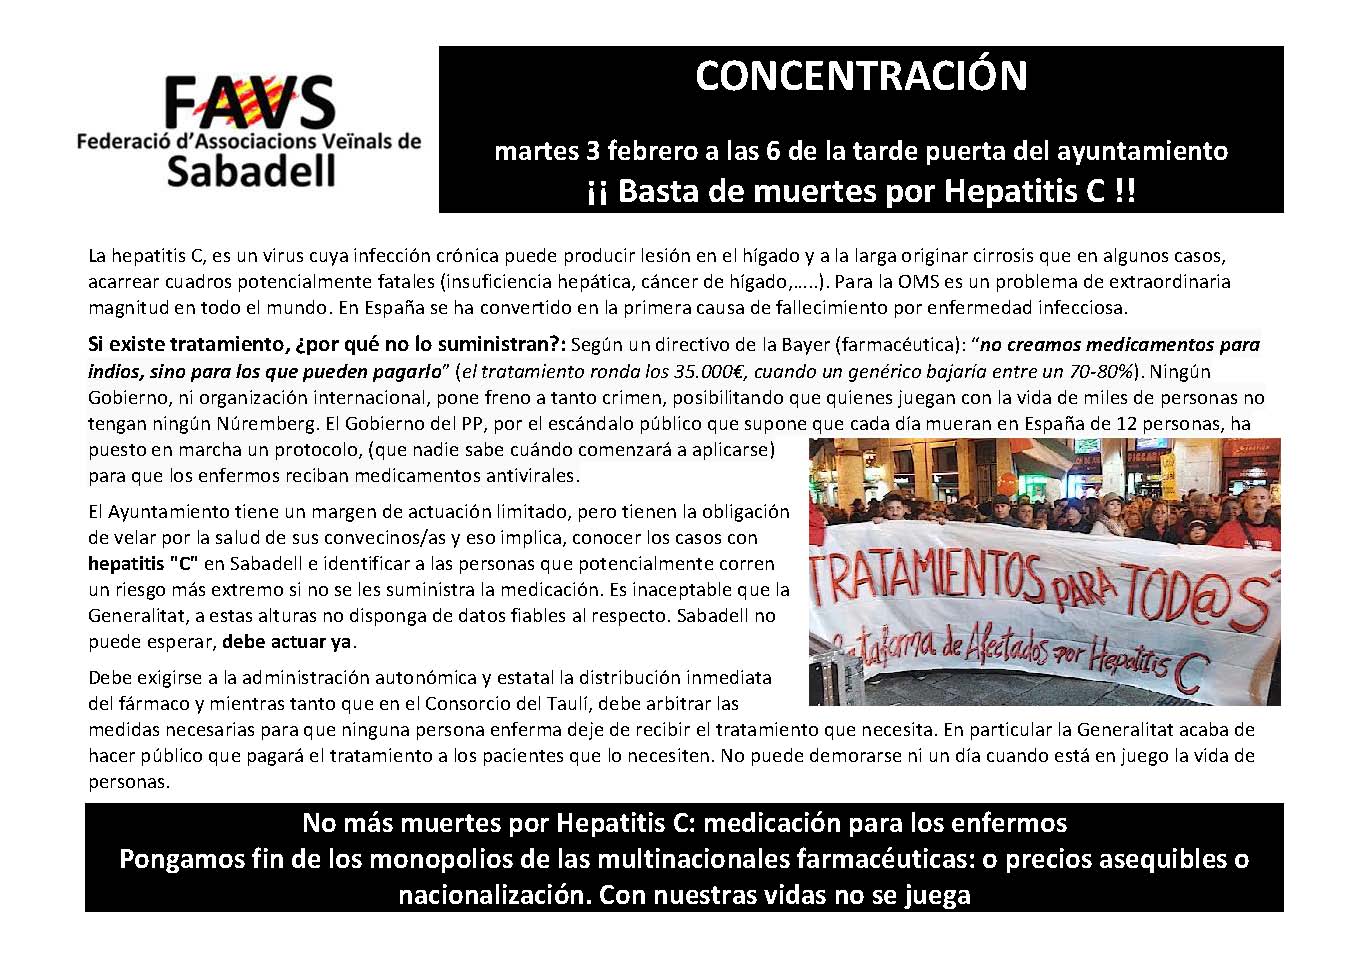 Dimarts 3 de febrer a les 18h a la plaça dr. robert (ajuntament) CONCENTRACIÓ HEPATITIS “C”